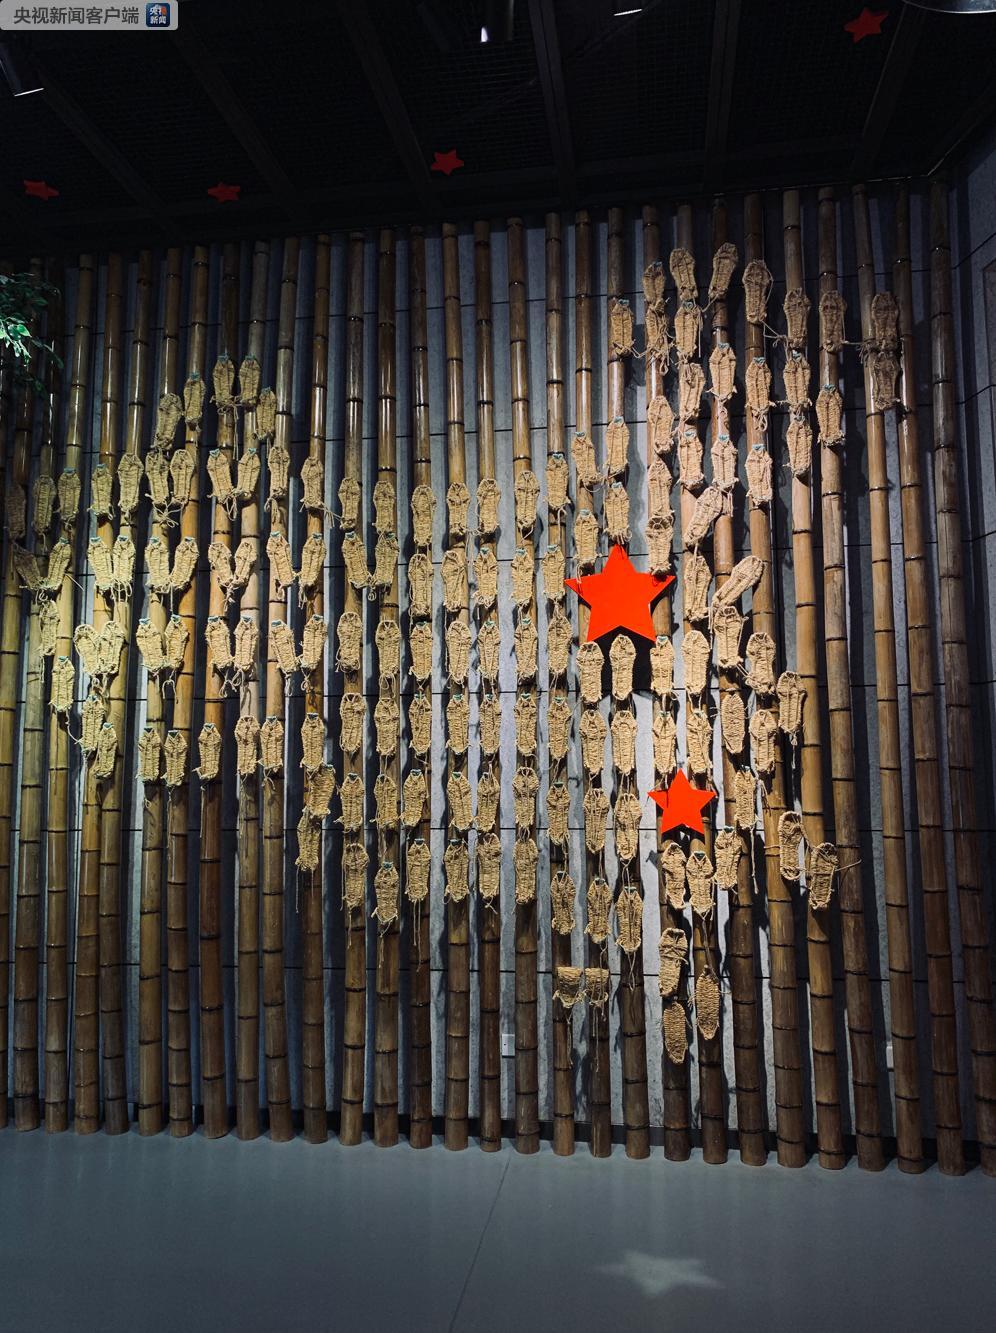 △纪念馆展出的“草鞋地图”。这是红军长征胜利80周年时，用红五星和80双草鞋绘出的中国地图。（央视记者邢彬拍摄）